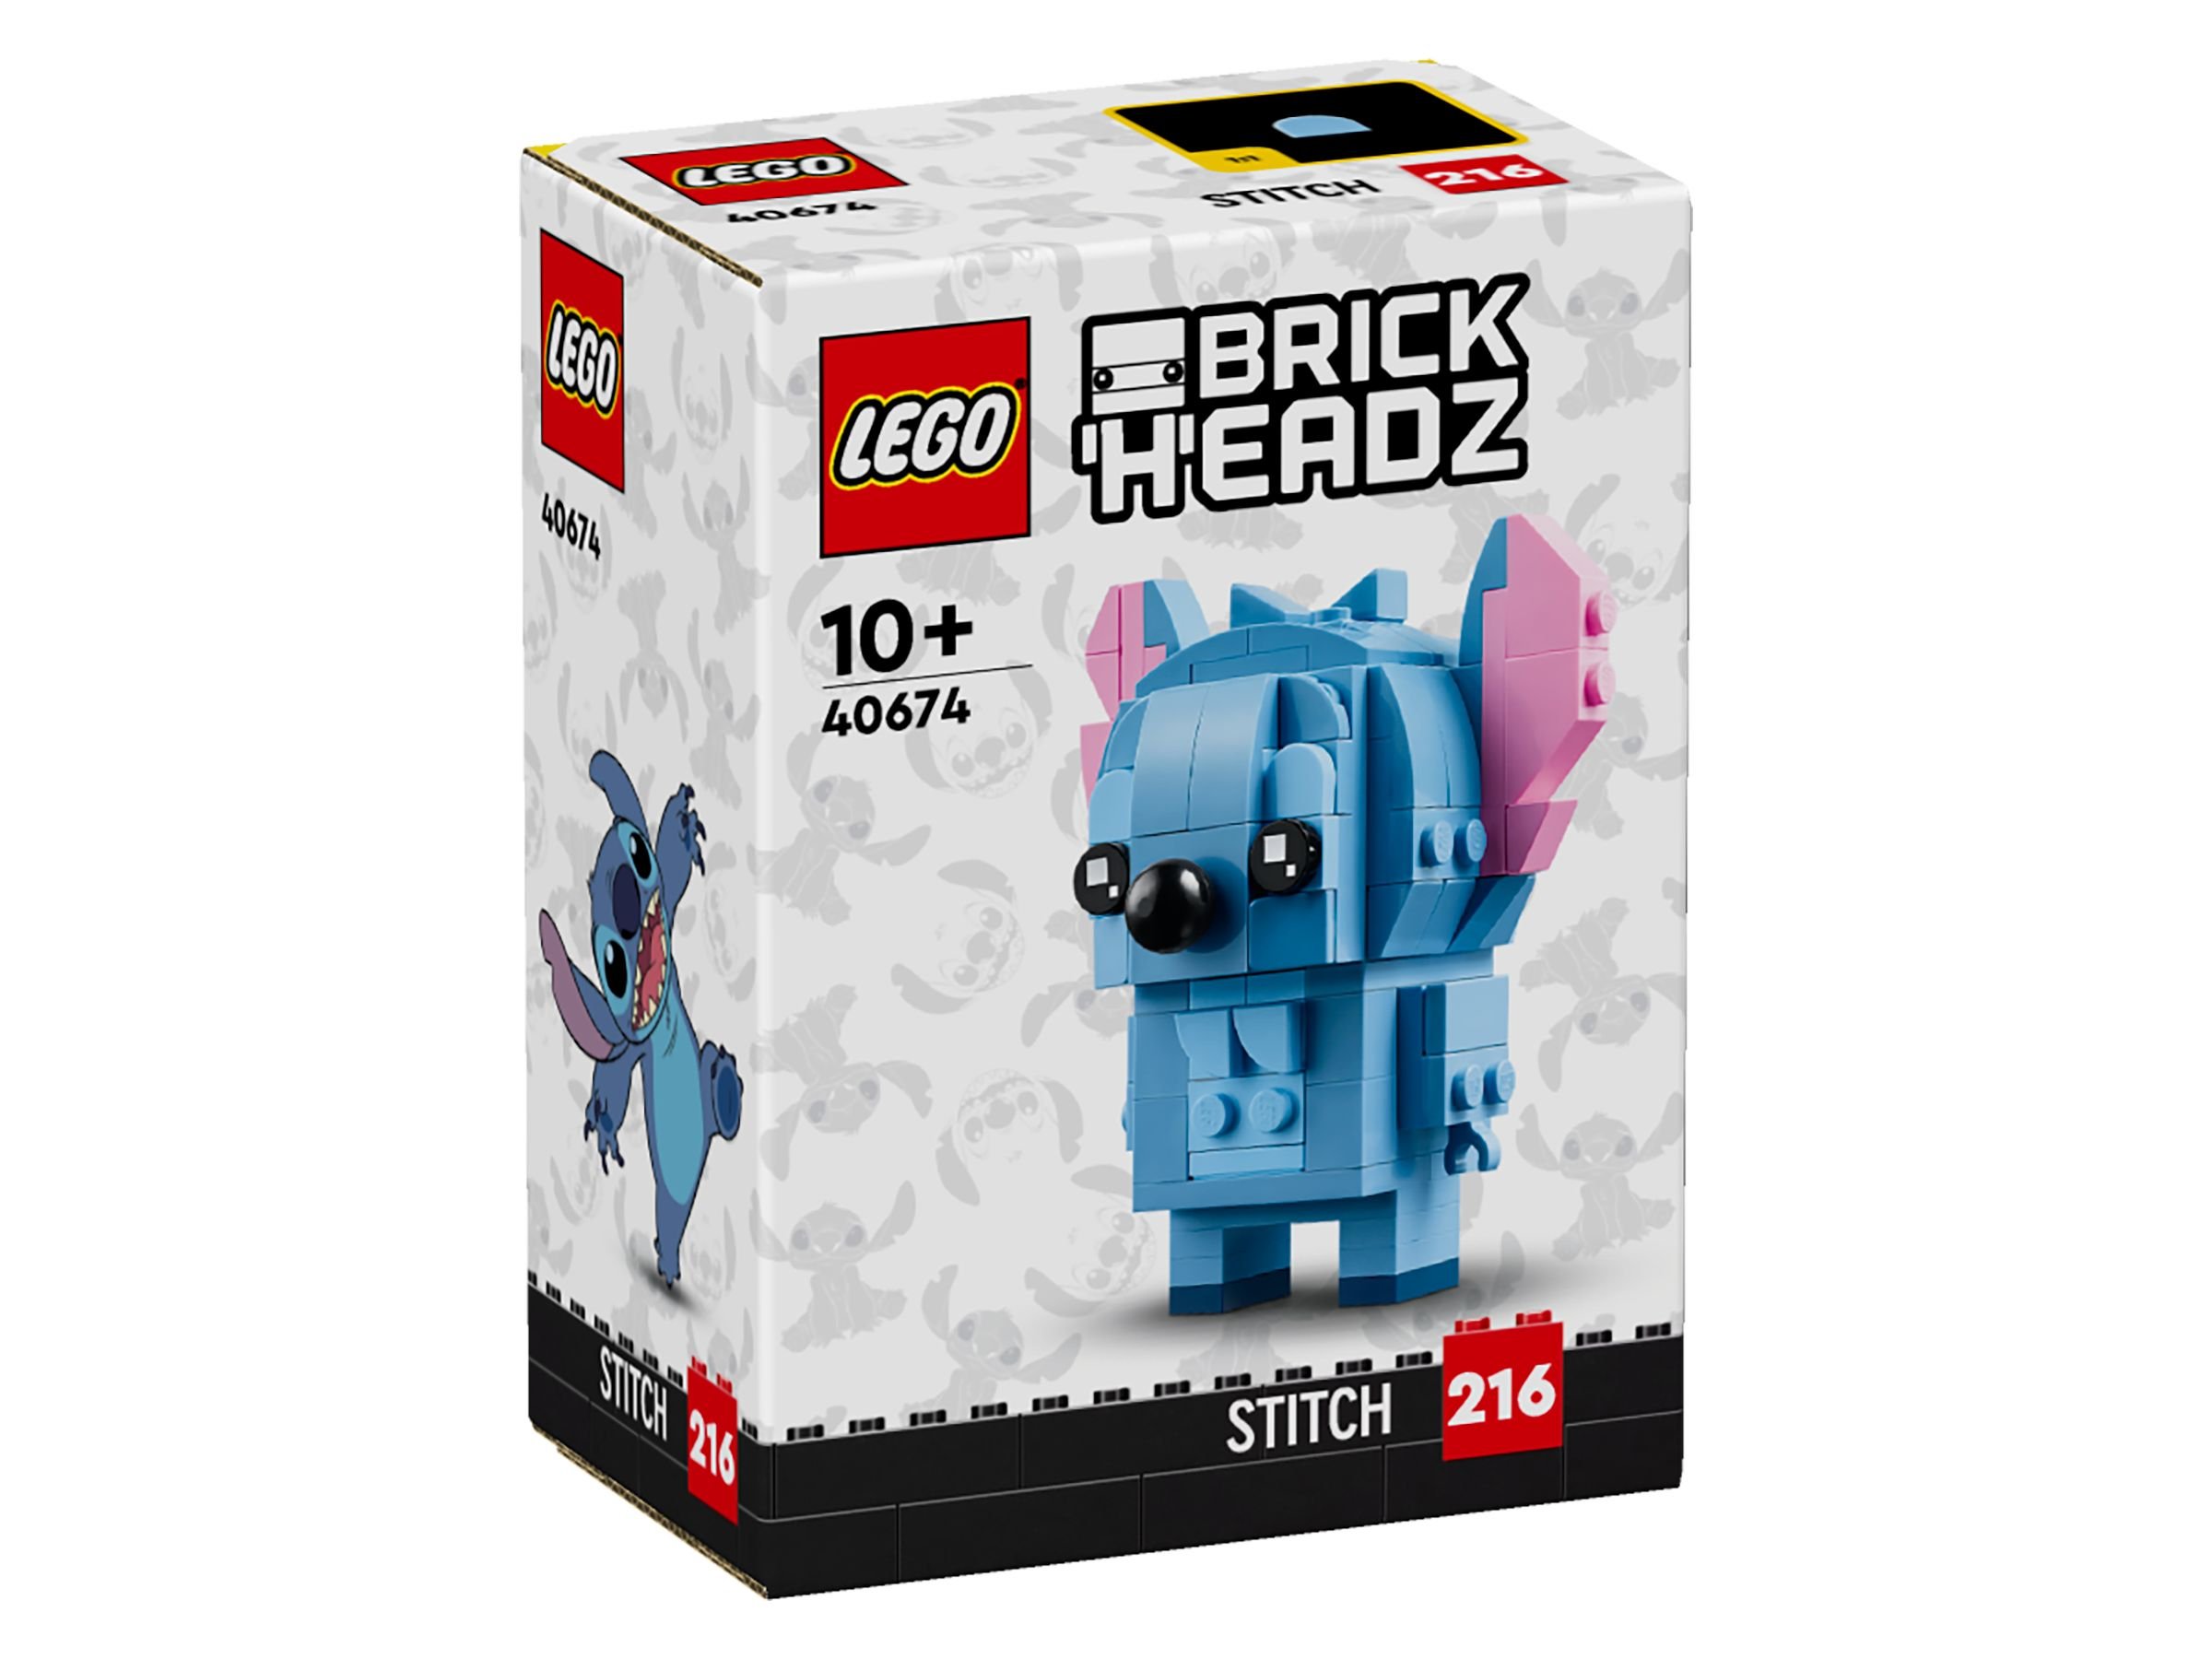 LEGO BrickHeadz 40674 Stitch LEGO_40674_Box1_v29.jpg